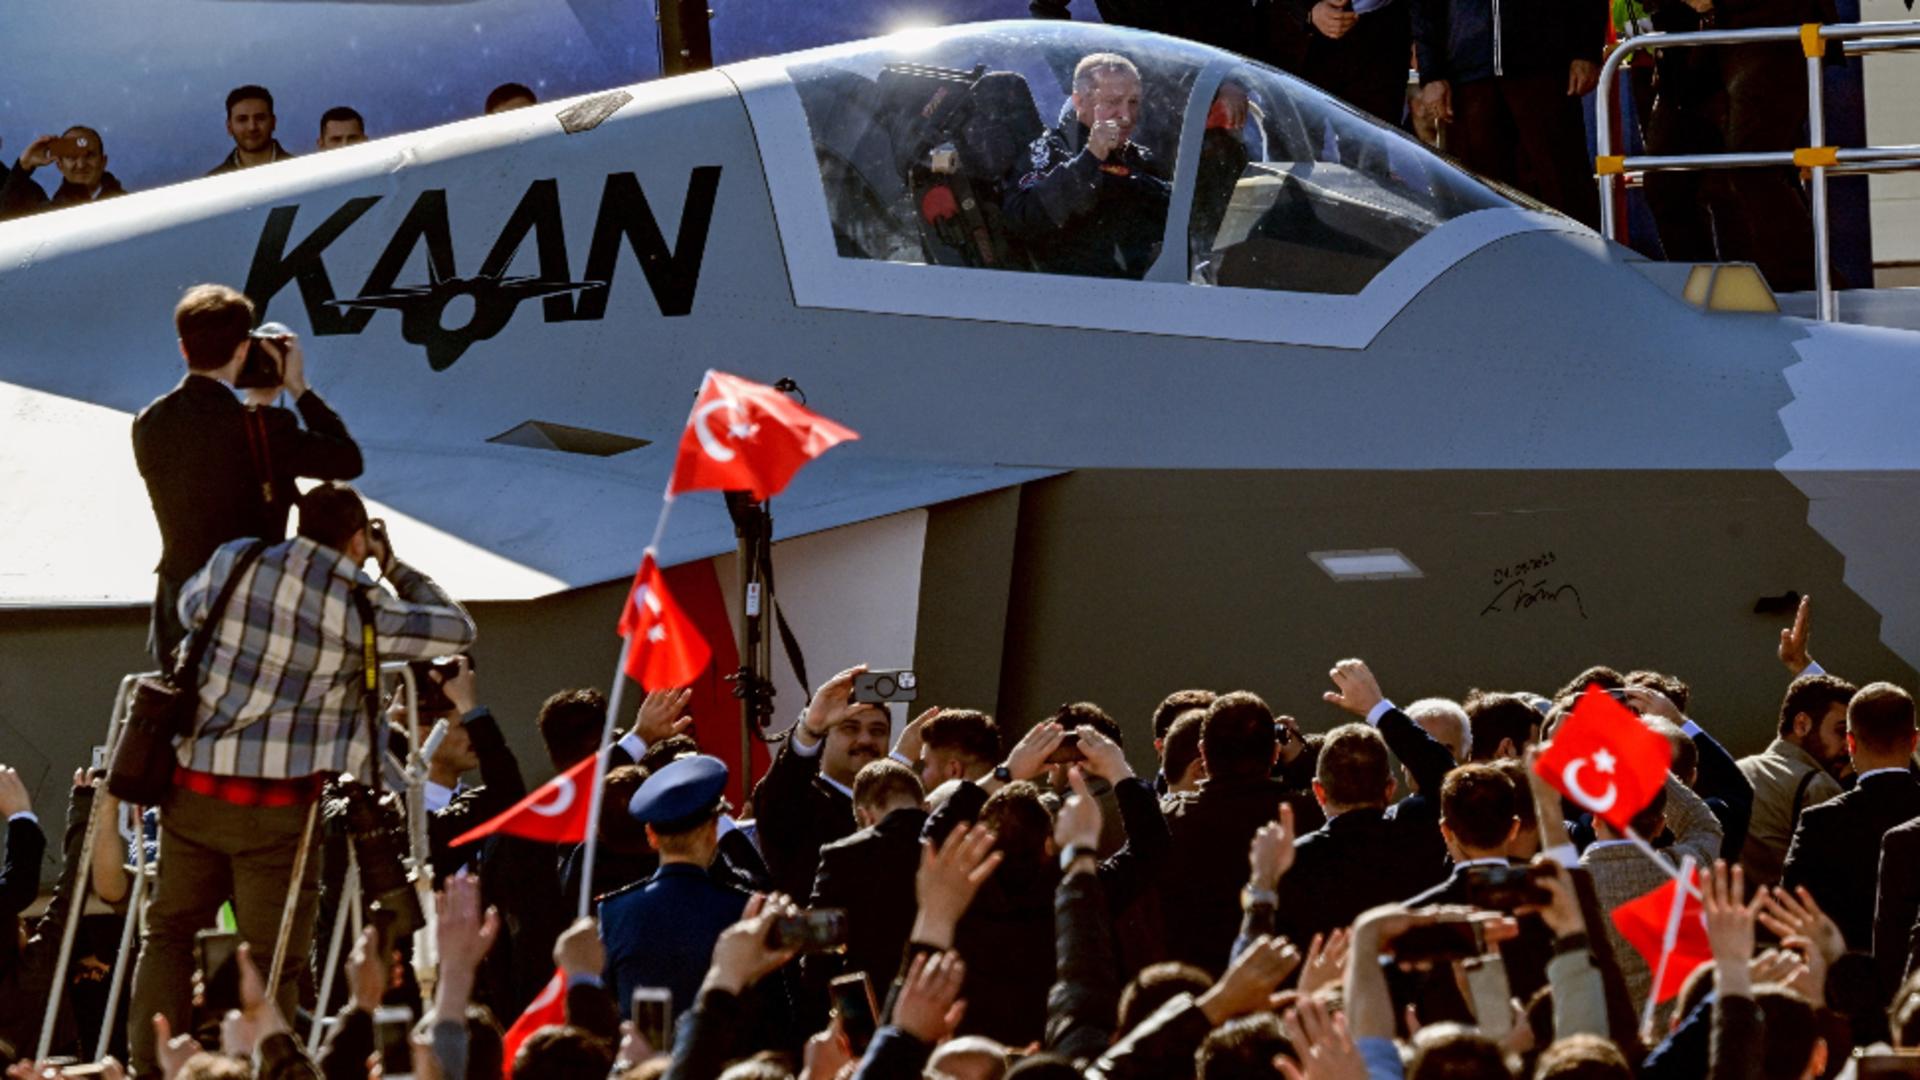 Turcia a testat propriul superavion Kaan, care va lua locul renumitelor F-16 americane